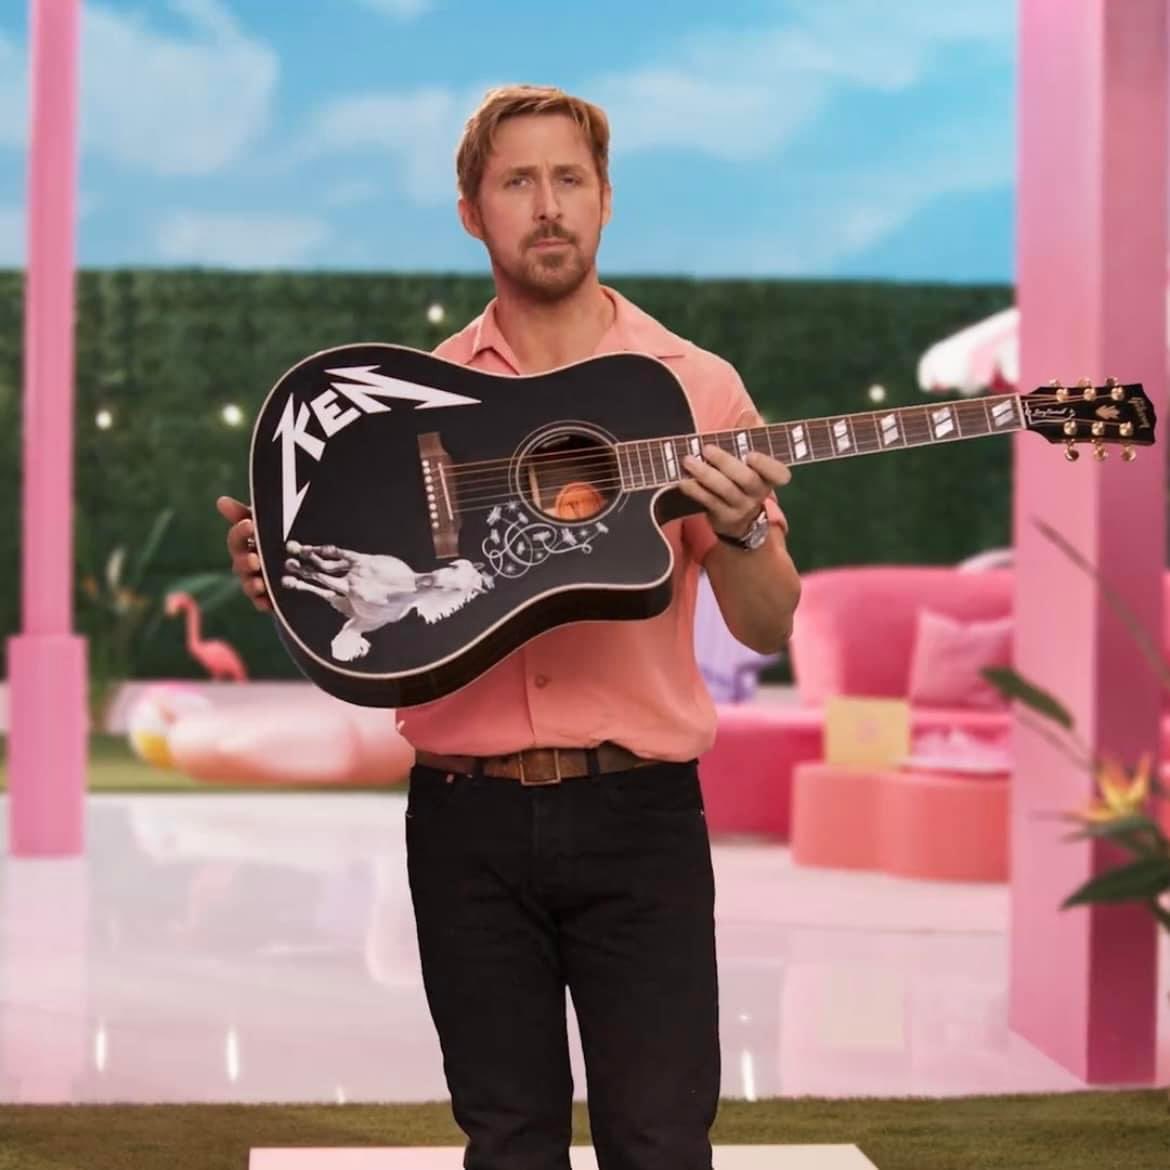 Ryan Gosling le envío un mensaje a Jimin de BTS 

'hola Jimin, soy Ryan Gosling. noté que tu atuendo en 'permission to dance' es el mismo que mi atuendo de Ken en la próxima película de 'Barbie'. tengo que reconocerlo, lo usaste primero, definitivamente lo luciste mejor y hay un